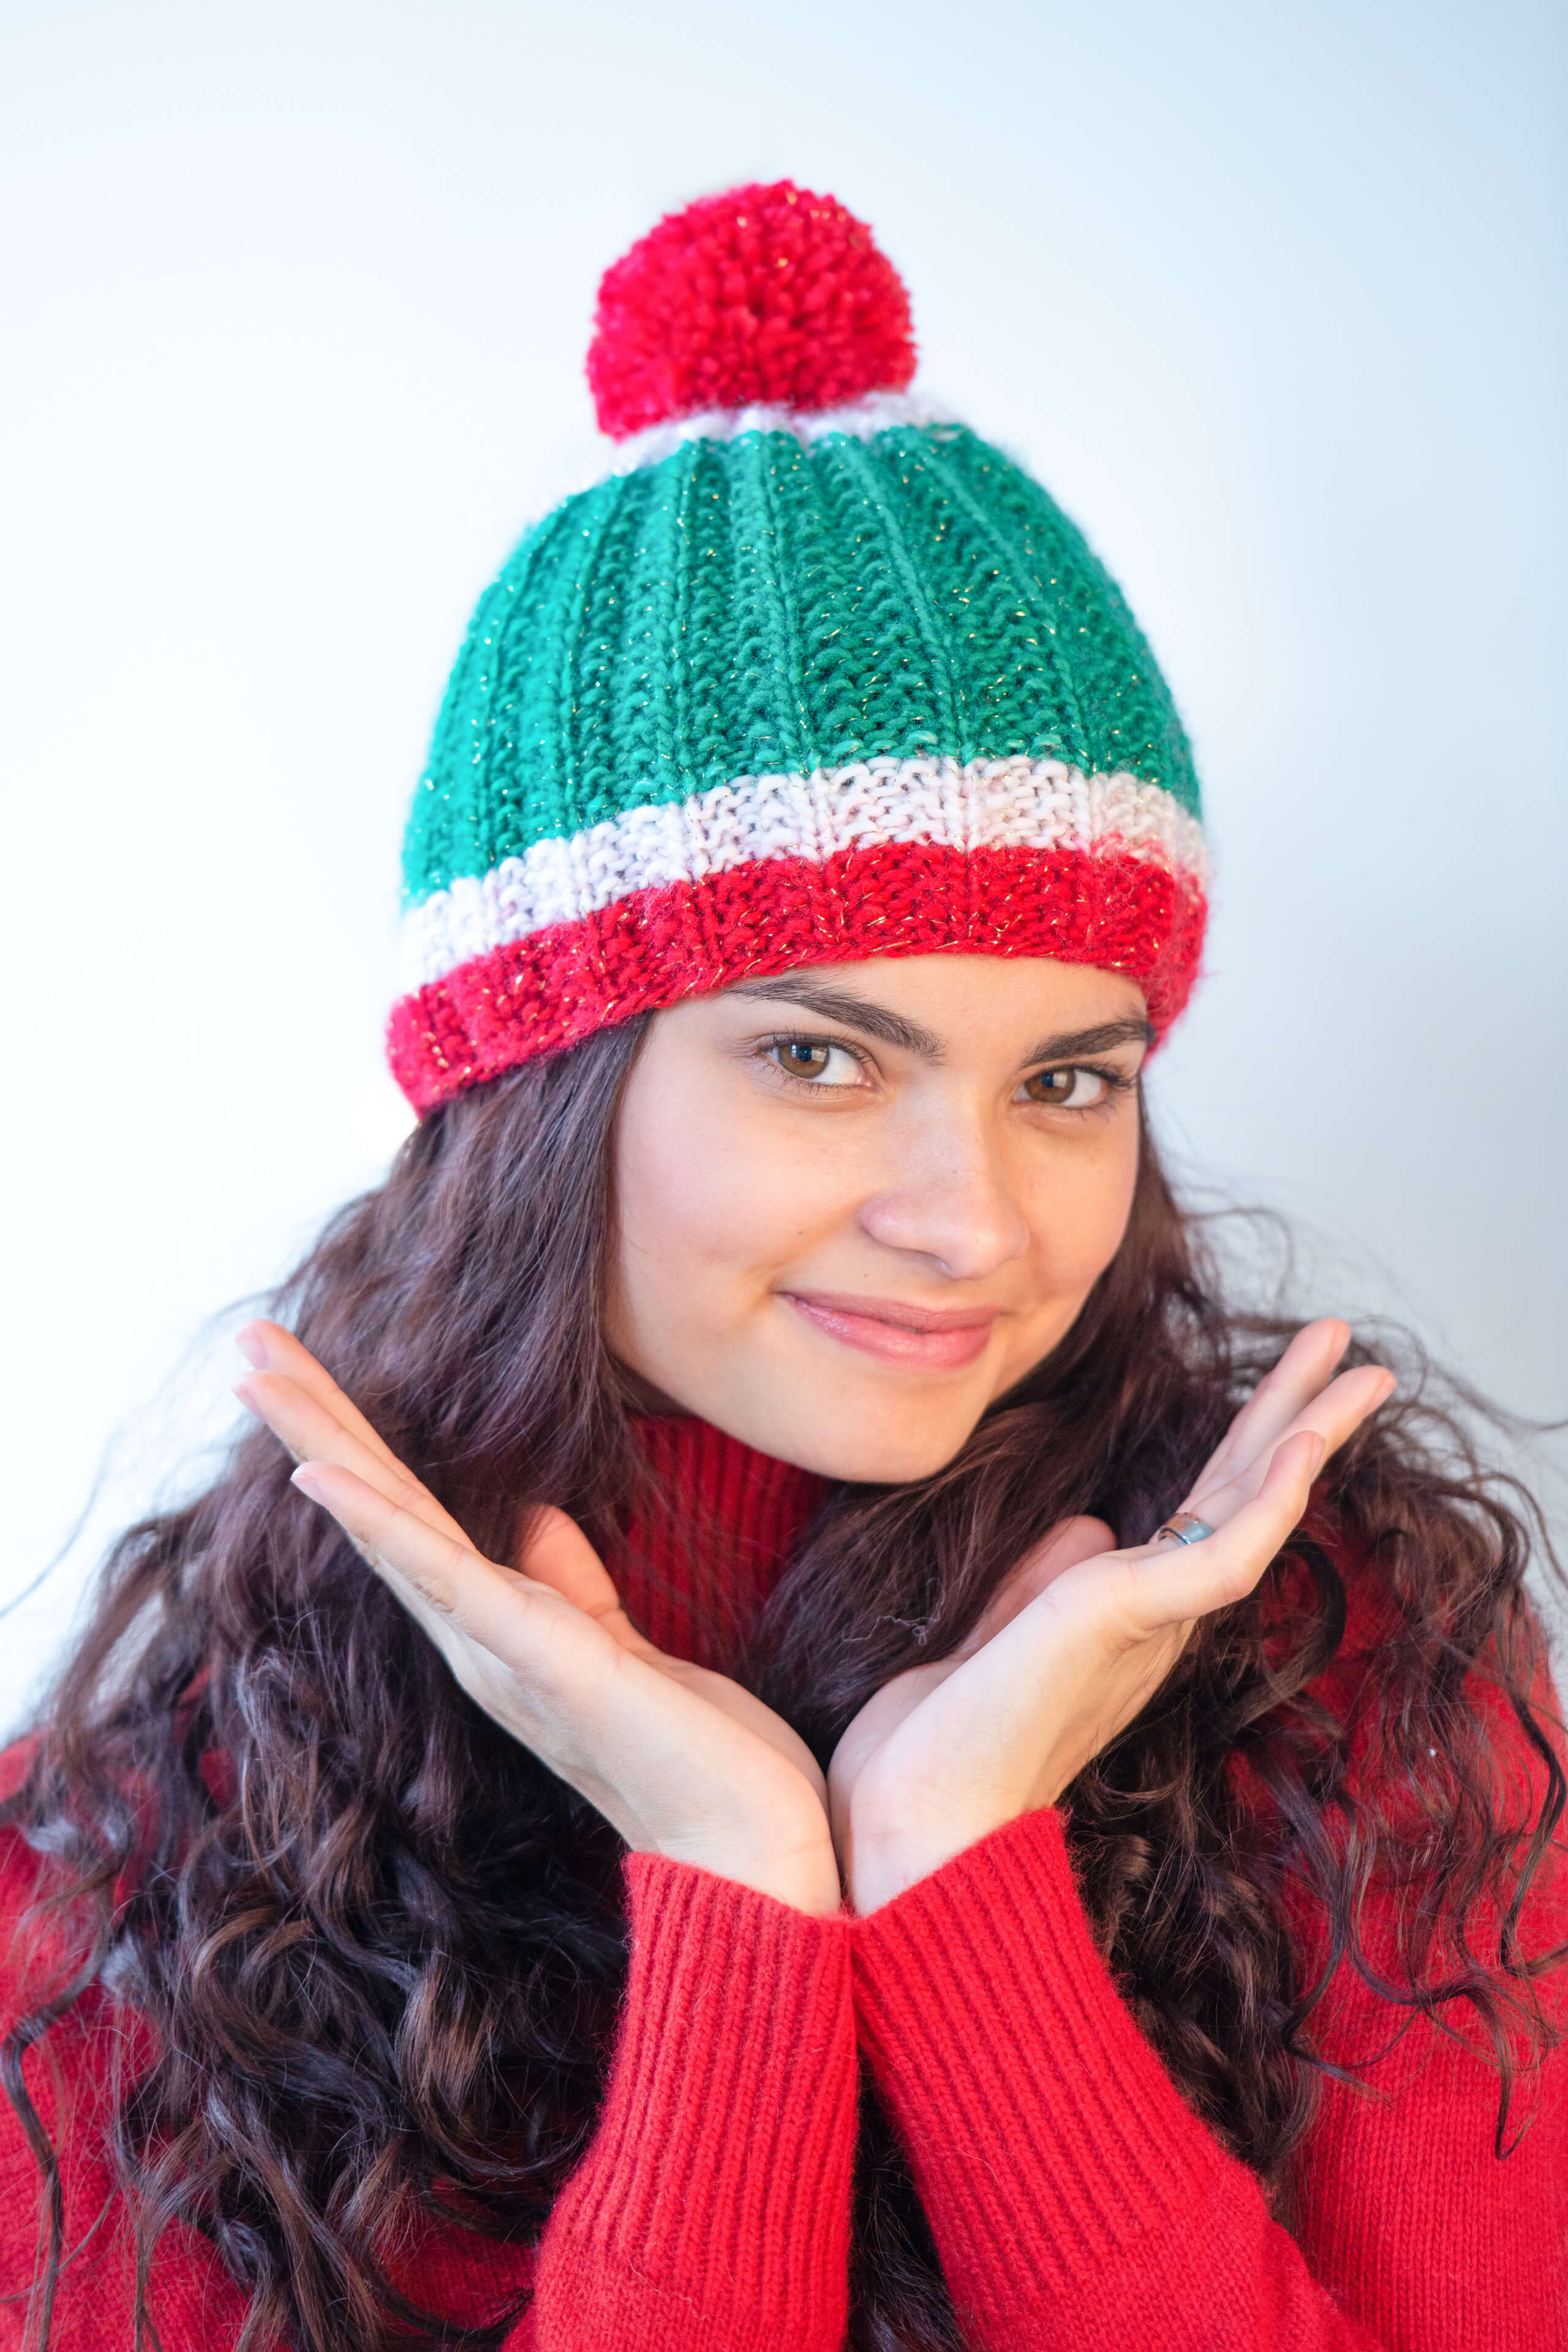 Frau in rotem Weihnachtspulli und grün-roter Bommelmütze